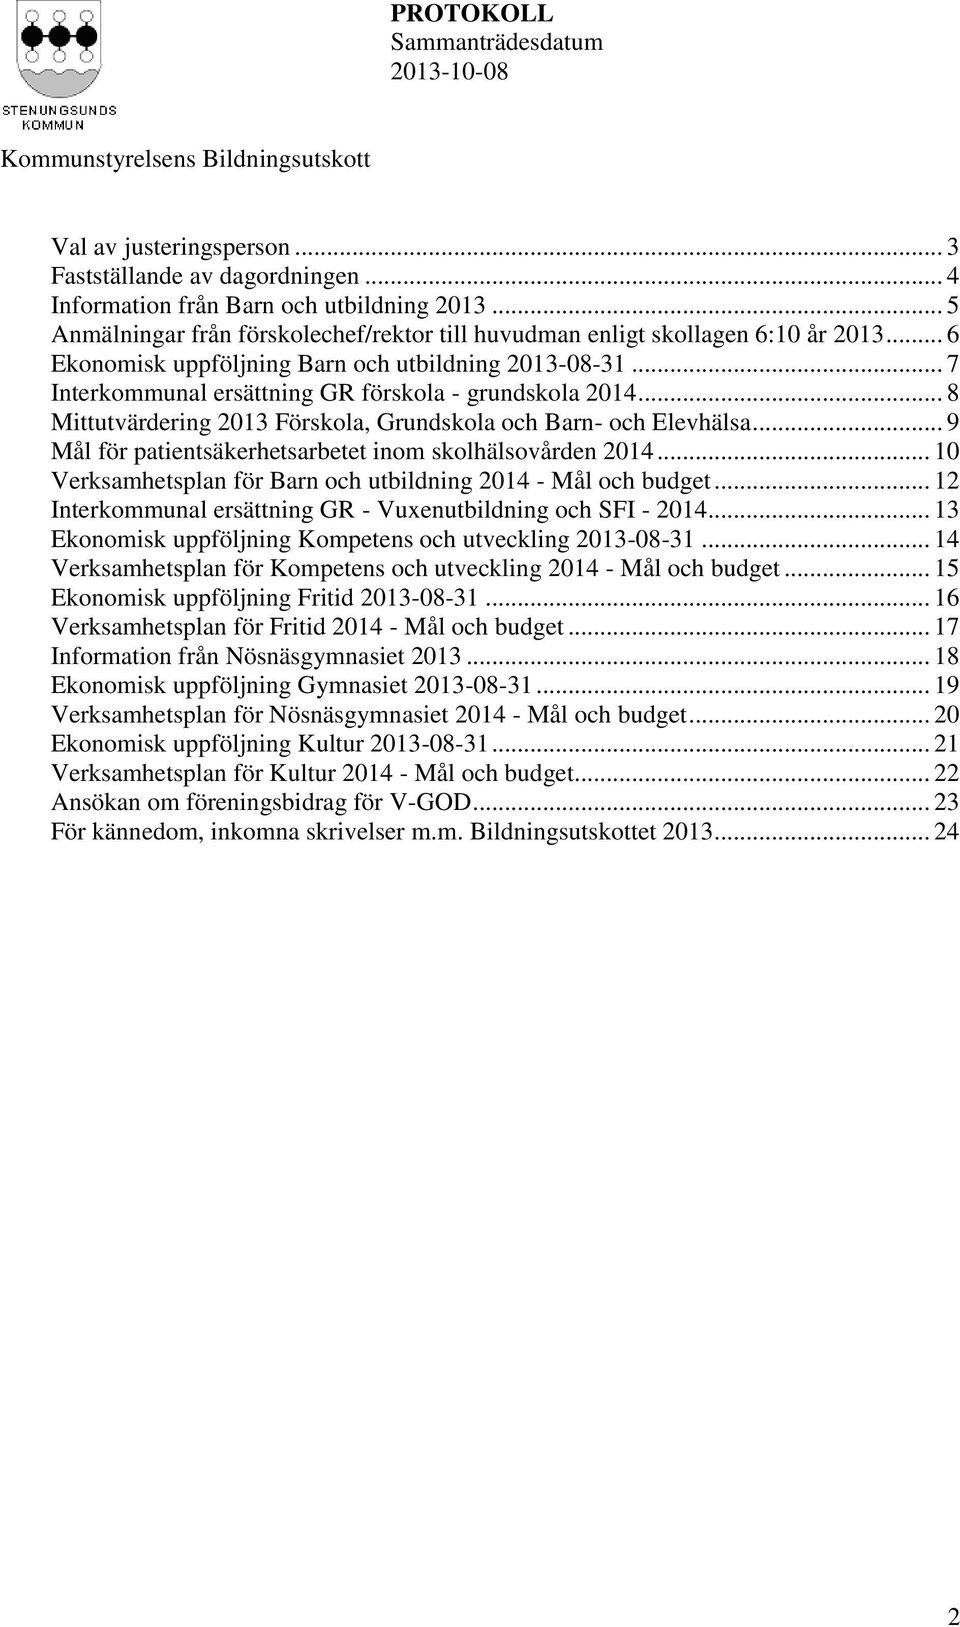 .. 9 Mål för patientsäkerhetsarbetet inom skolhälsovården 2014... 10 Verksamhetsplan för Barn och utbildning 2014 - Mål och budget... 12 Interkommunal ersättning GR - Vuxenutbildning och SFI - 2014.